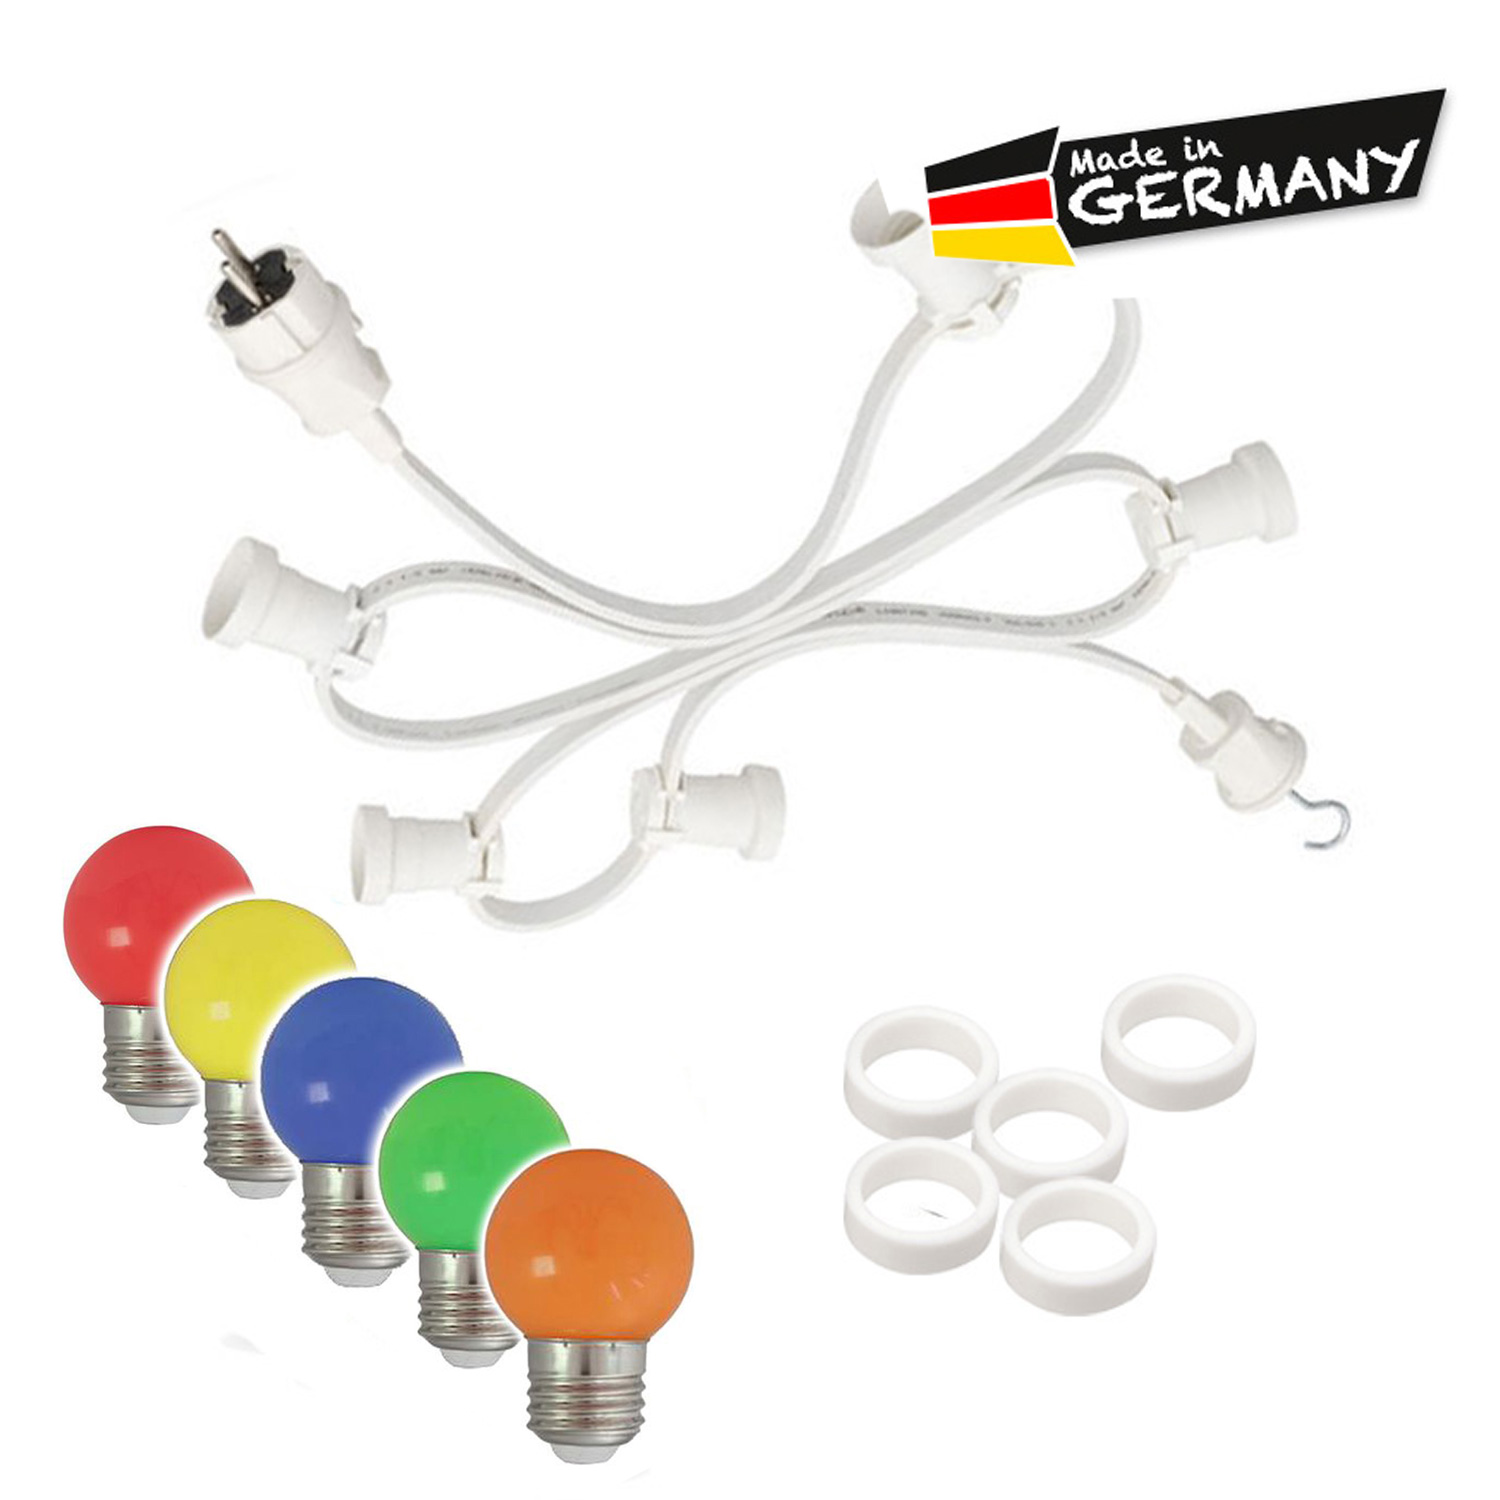 Illu-/Partylichterkette 10m - Außenlichterkette weiß - Made in Germany - 10 x bunte LED Kugellampen